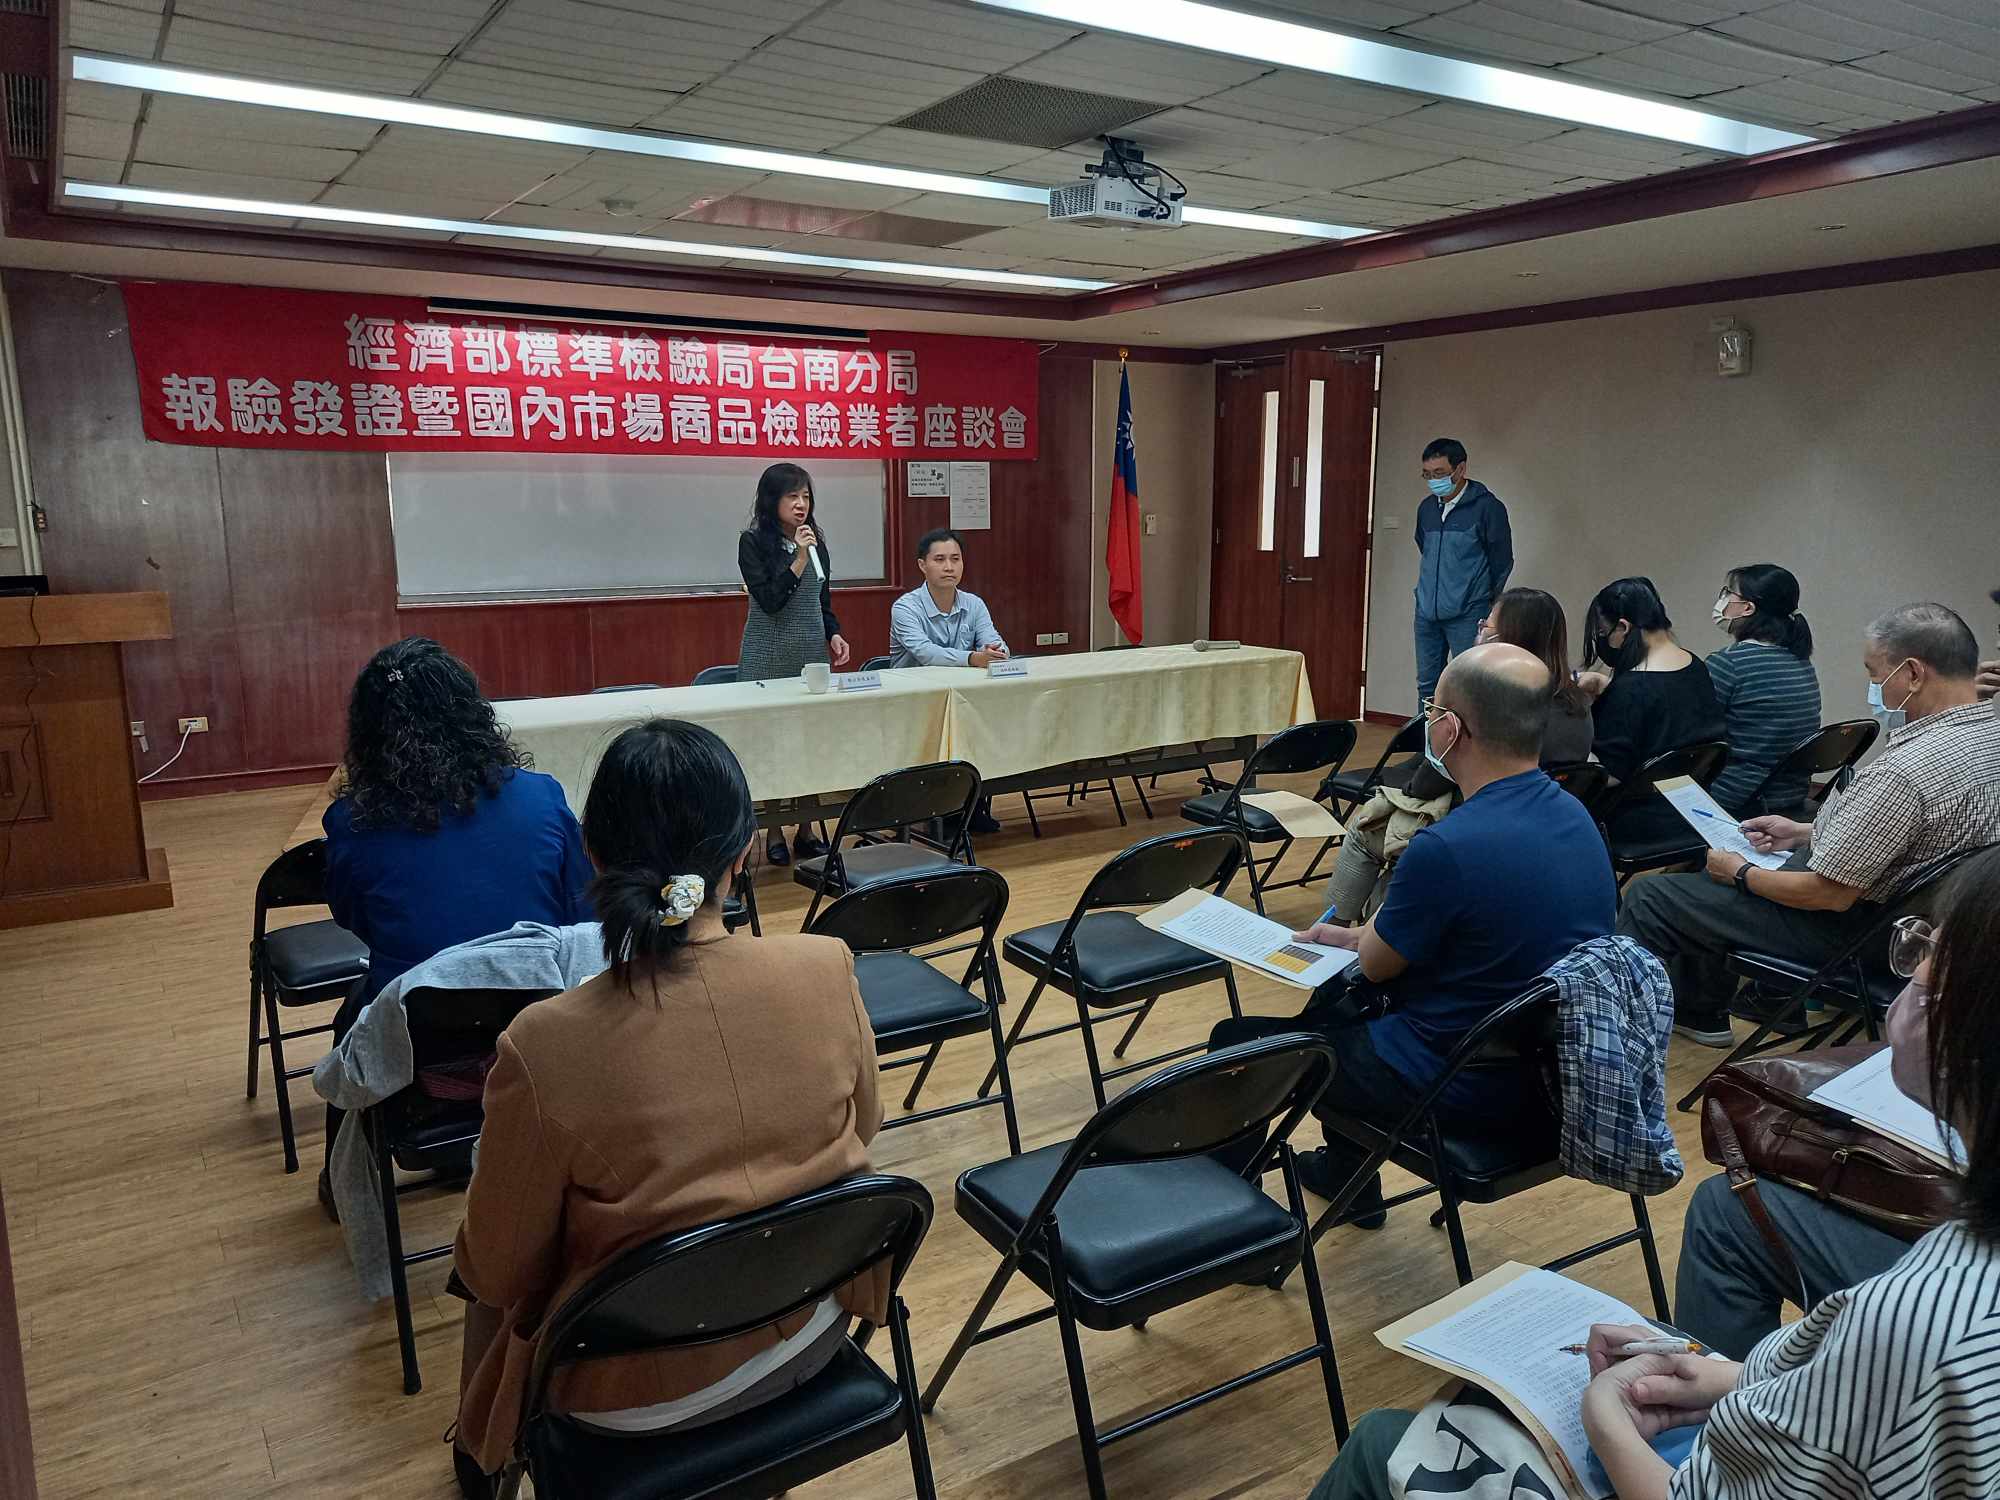 標準檢驗局臺南分局舉辦112年度報驗發證暨國內市場商品檢驗業者座談會